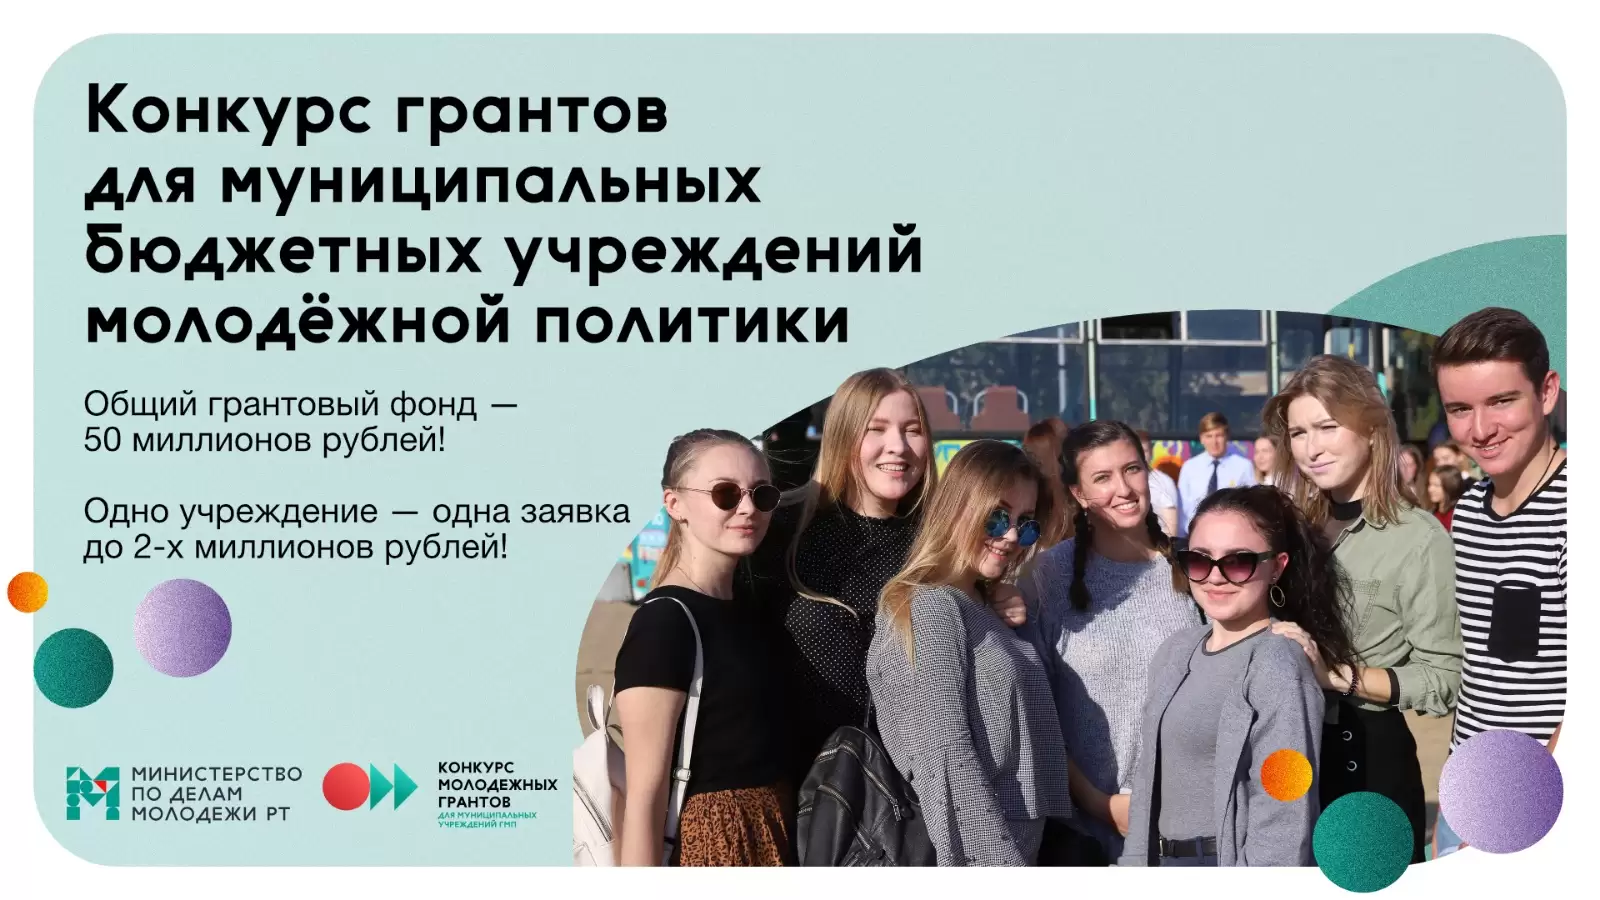 В Татарстане запущен конкурс на 50 млн рублей для учреждений молодежной политики